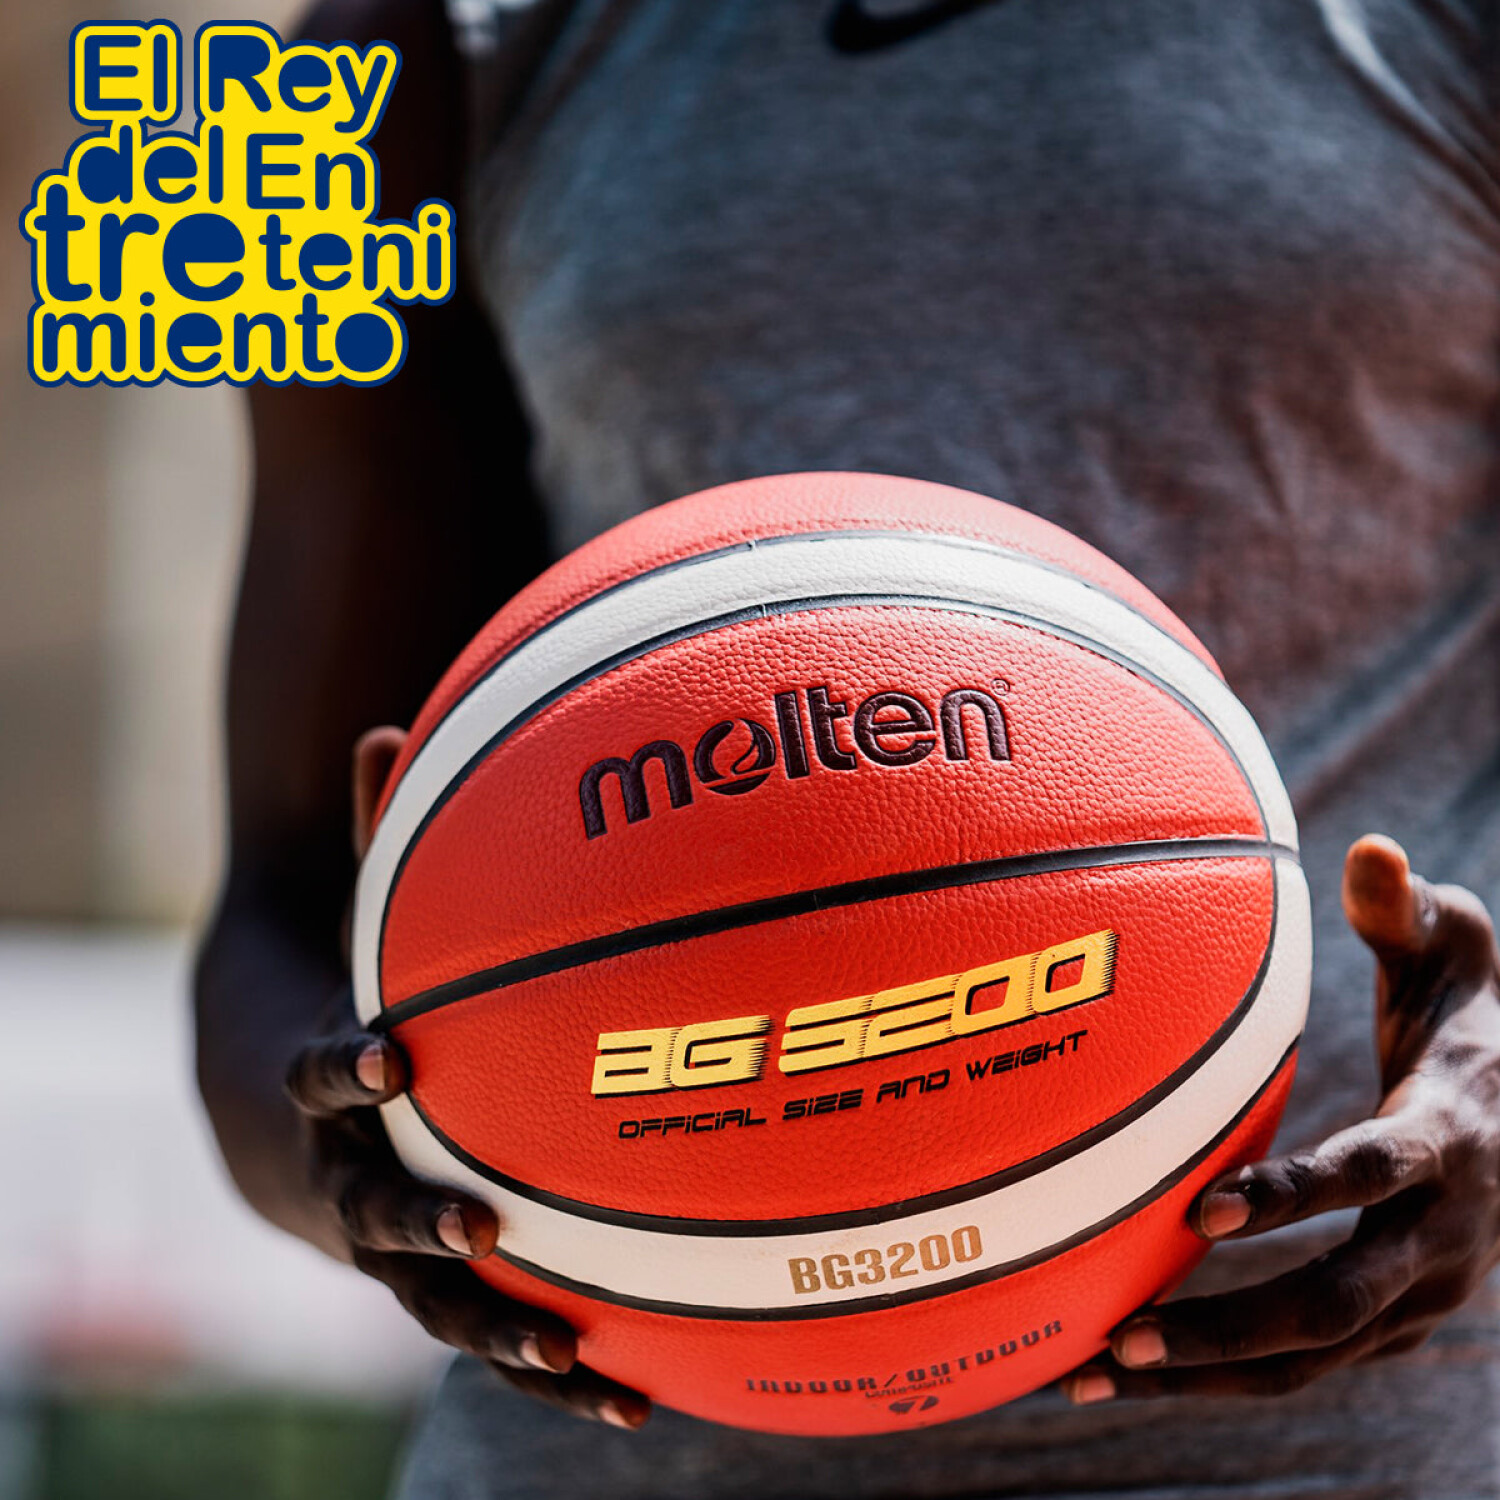 Pelota Spalding Oficial Basketball Tf1000 + Regalos! — El Rey del